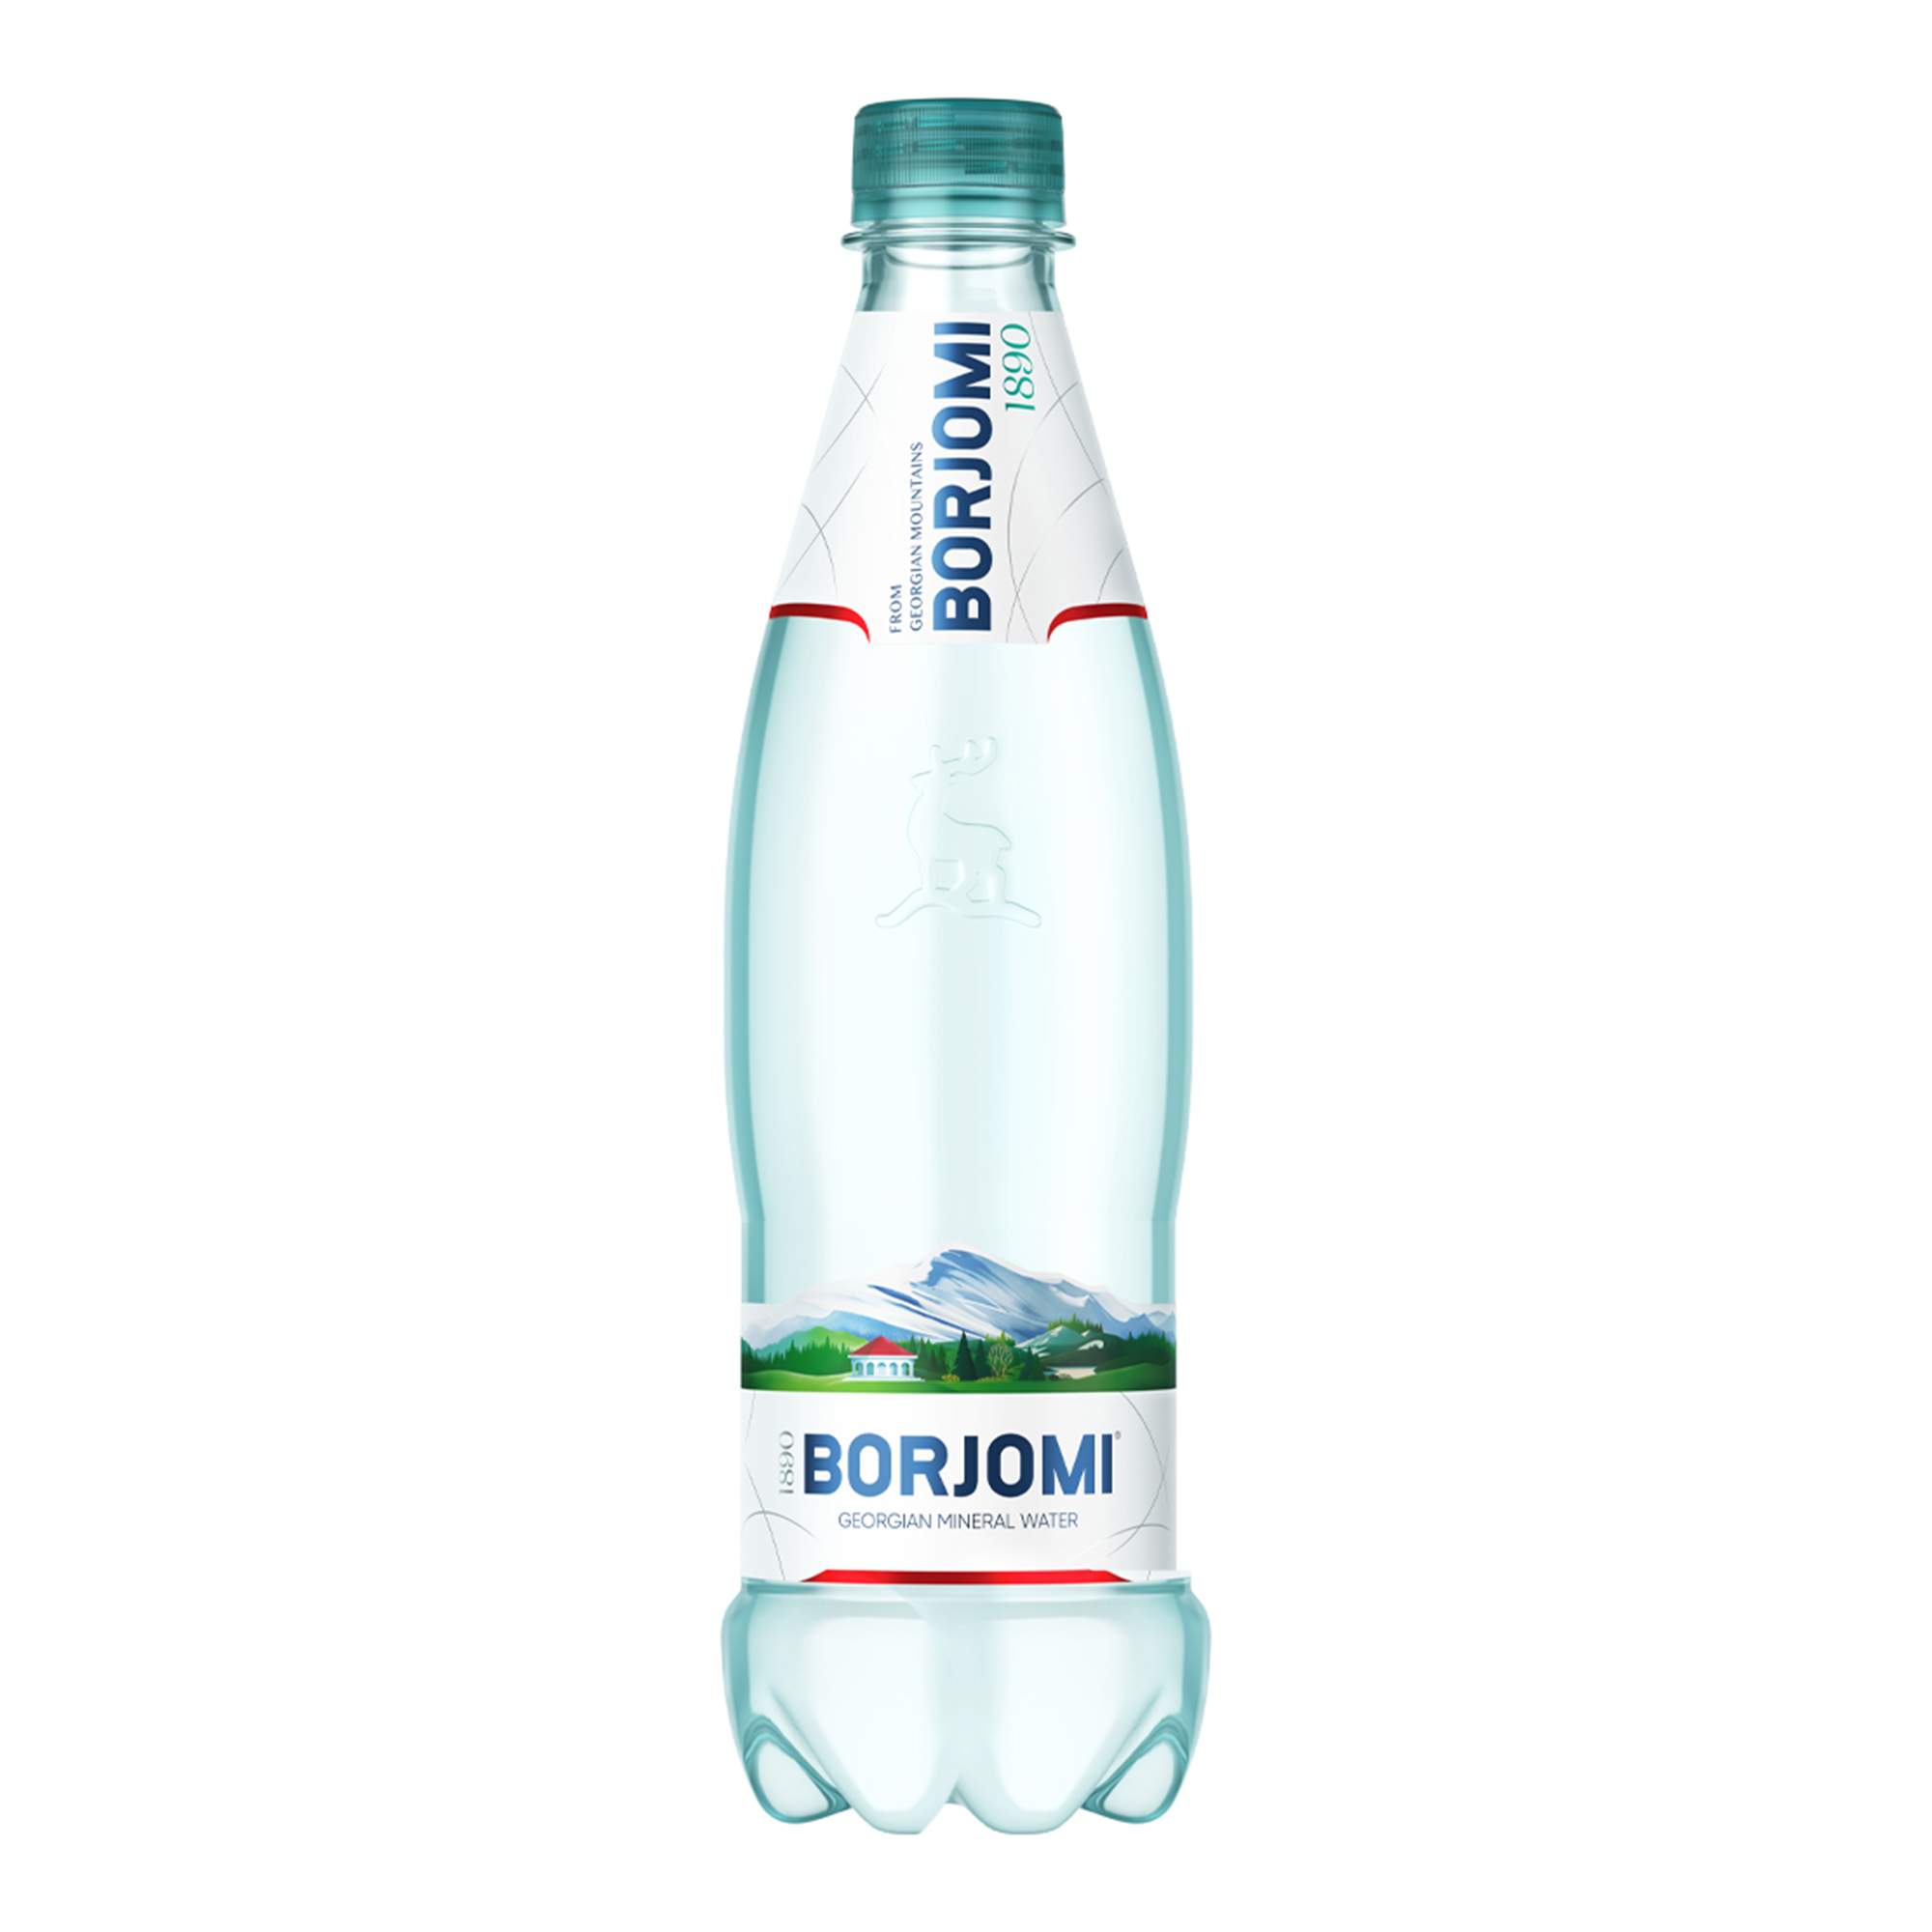 Вода природная минеральная Borjomi, 0,5 л ПЭТ - купить в Мегамаркет Москва Пушкино, цена на Мегамаркет